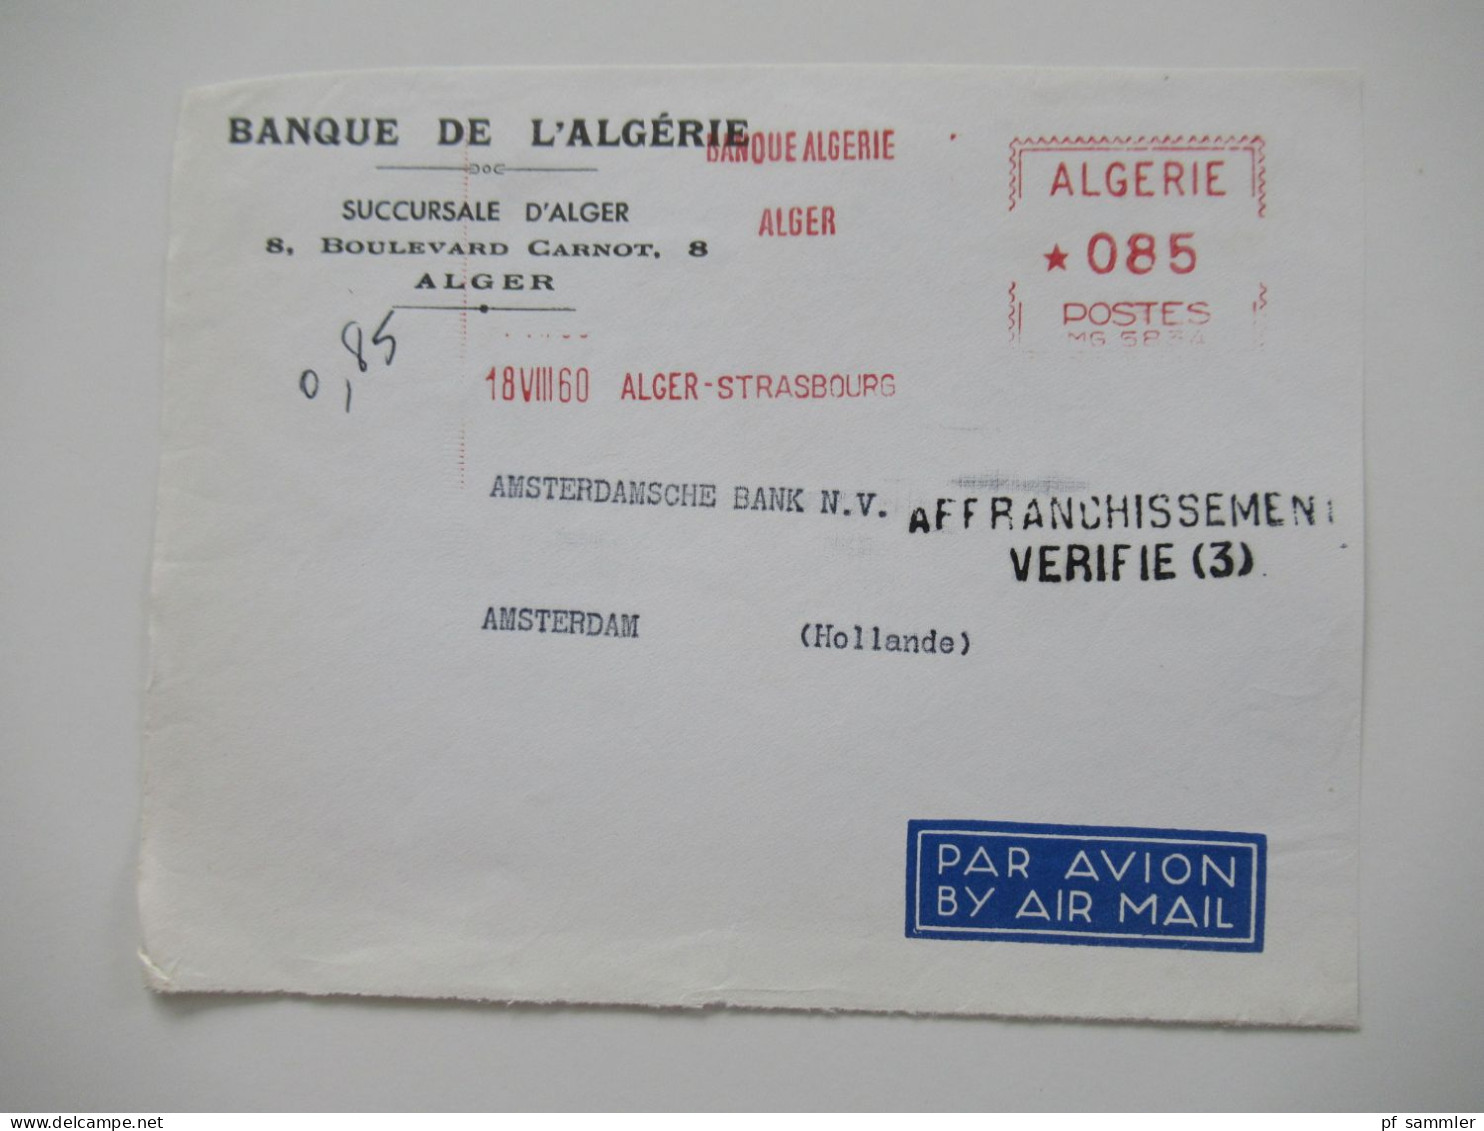 Algerien 1950 / 60er Jahre Belegeposten 50 VS (Vorderseiten) / viele Stempel / AFS Freistempel nach Holland